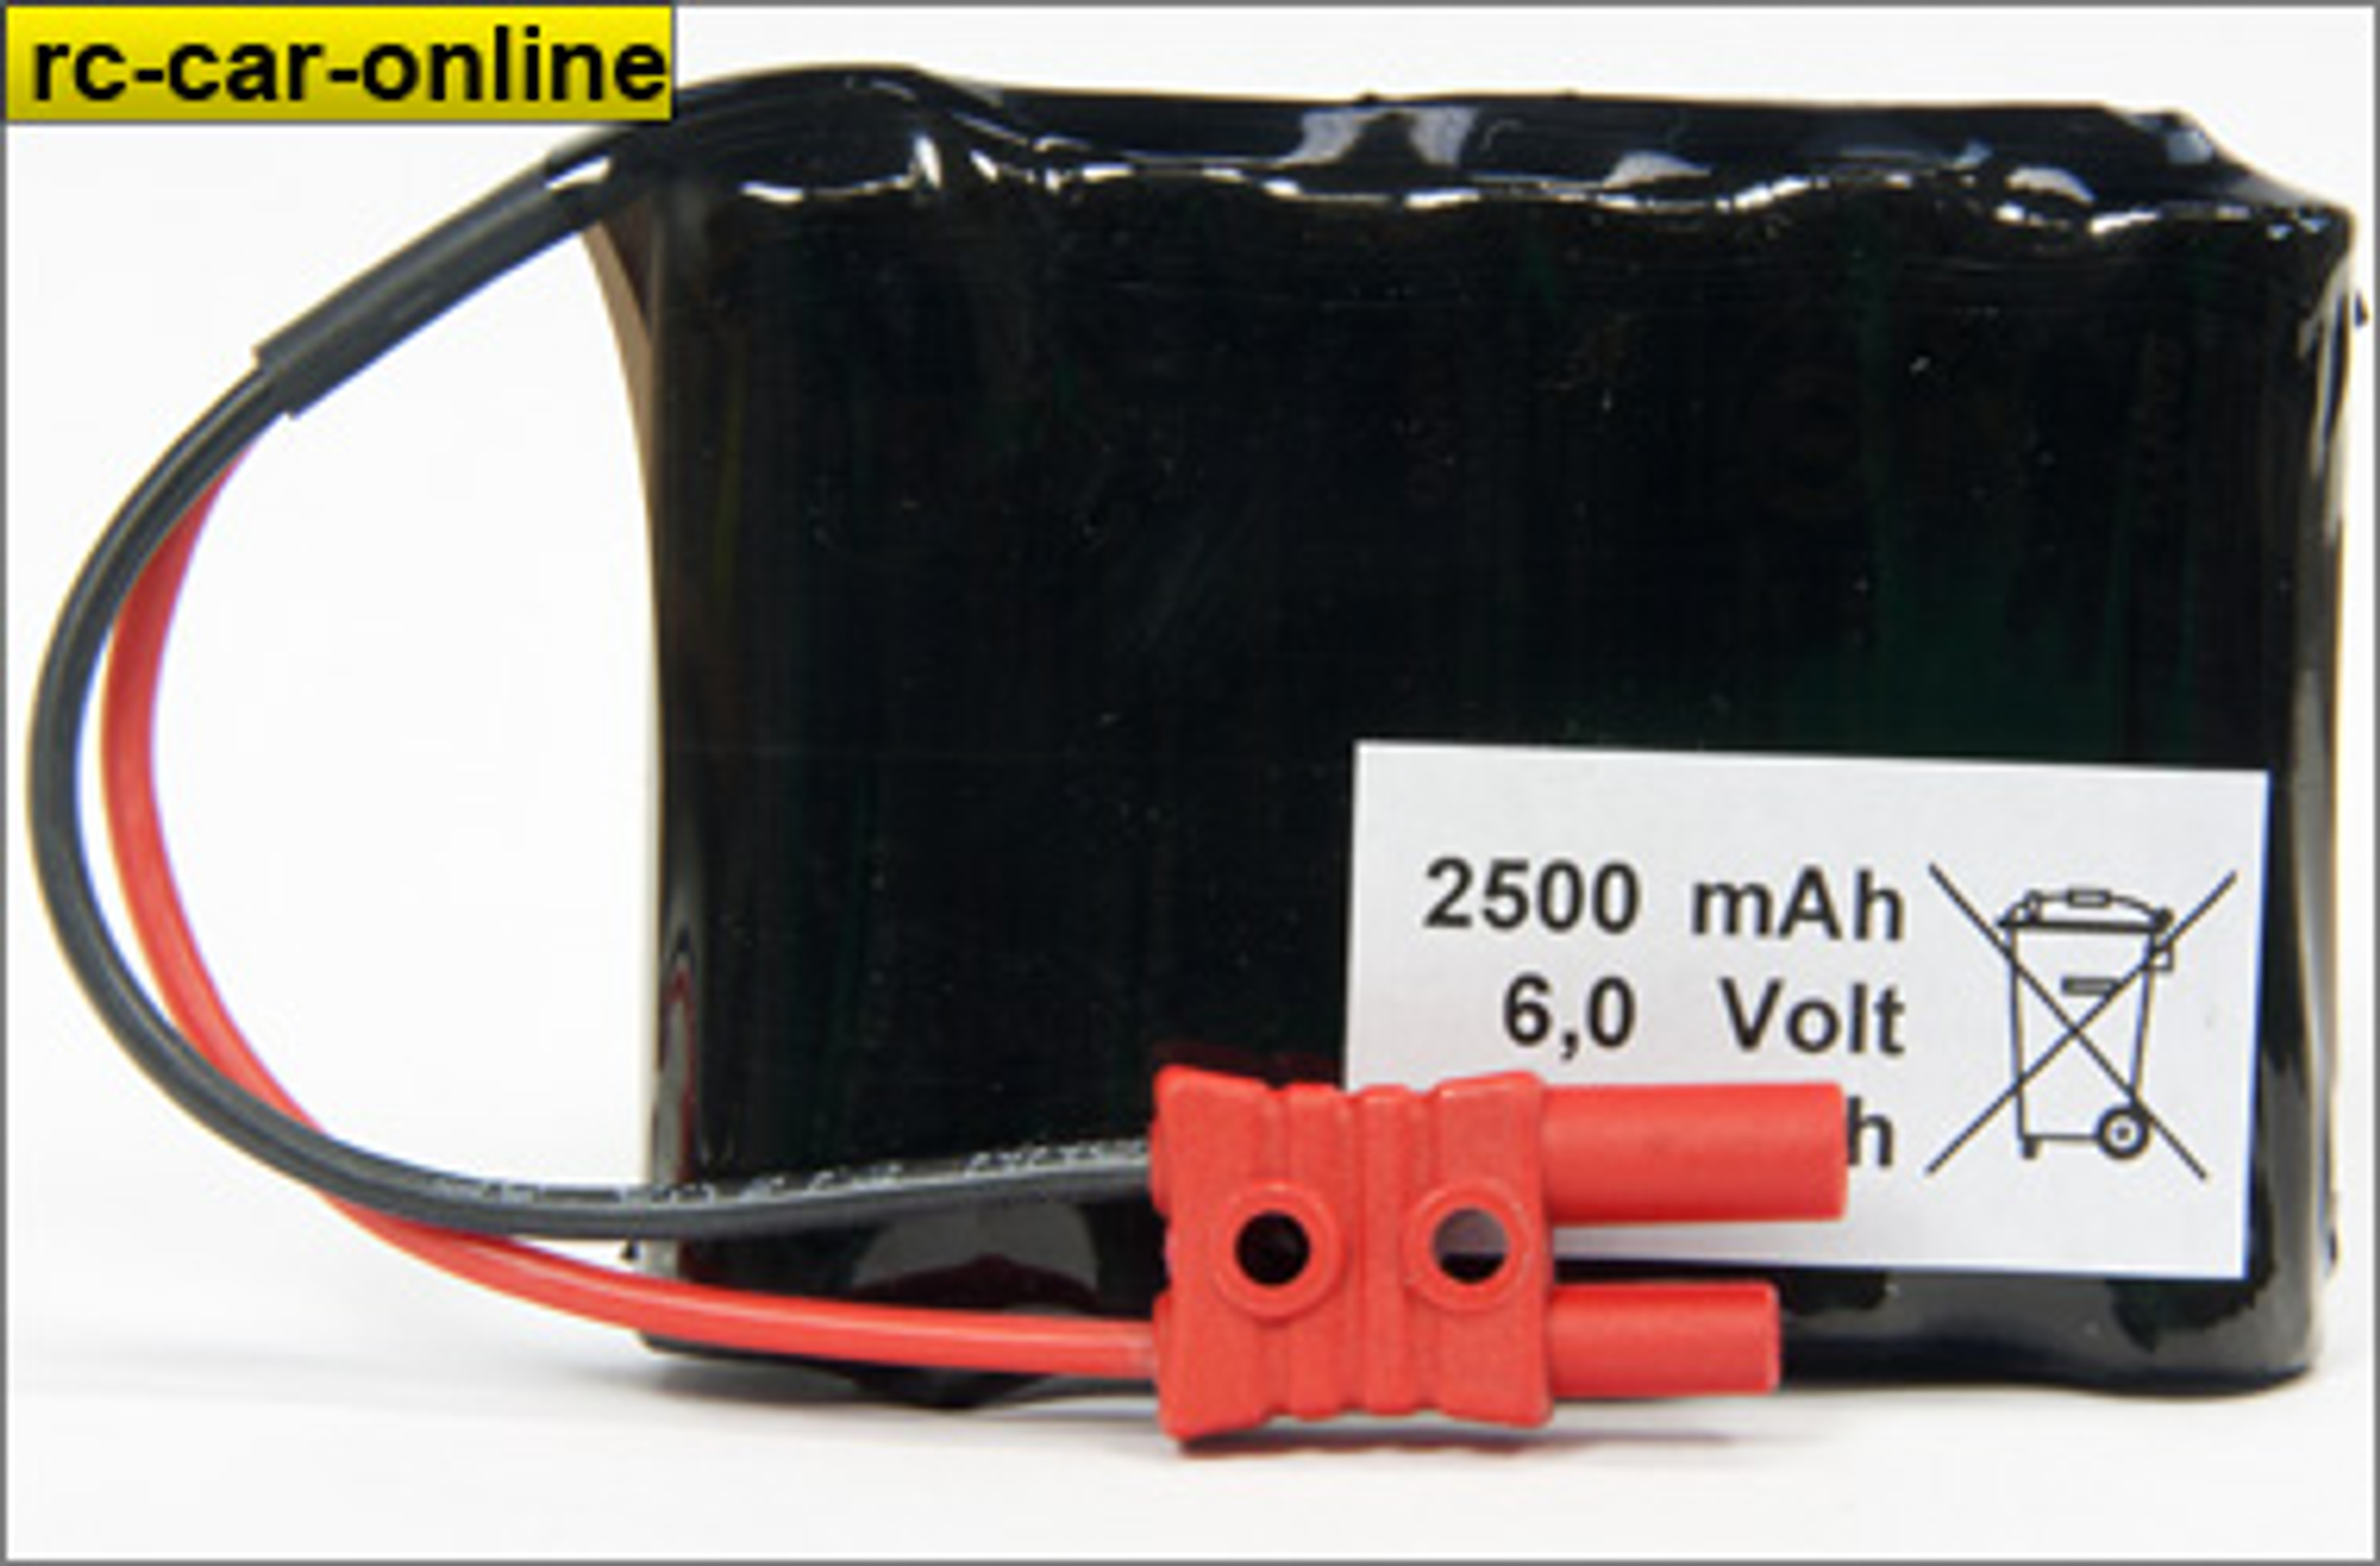 y0663 Sanyo eneloop XX receiver battery 2500 mAh NiMh, 1 pce.